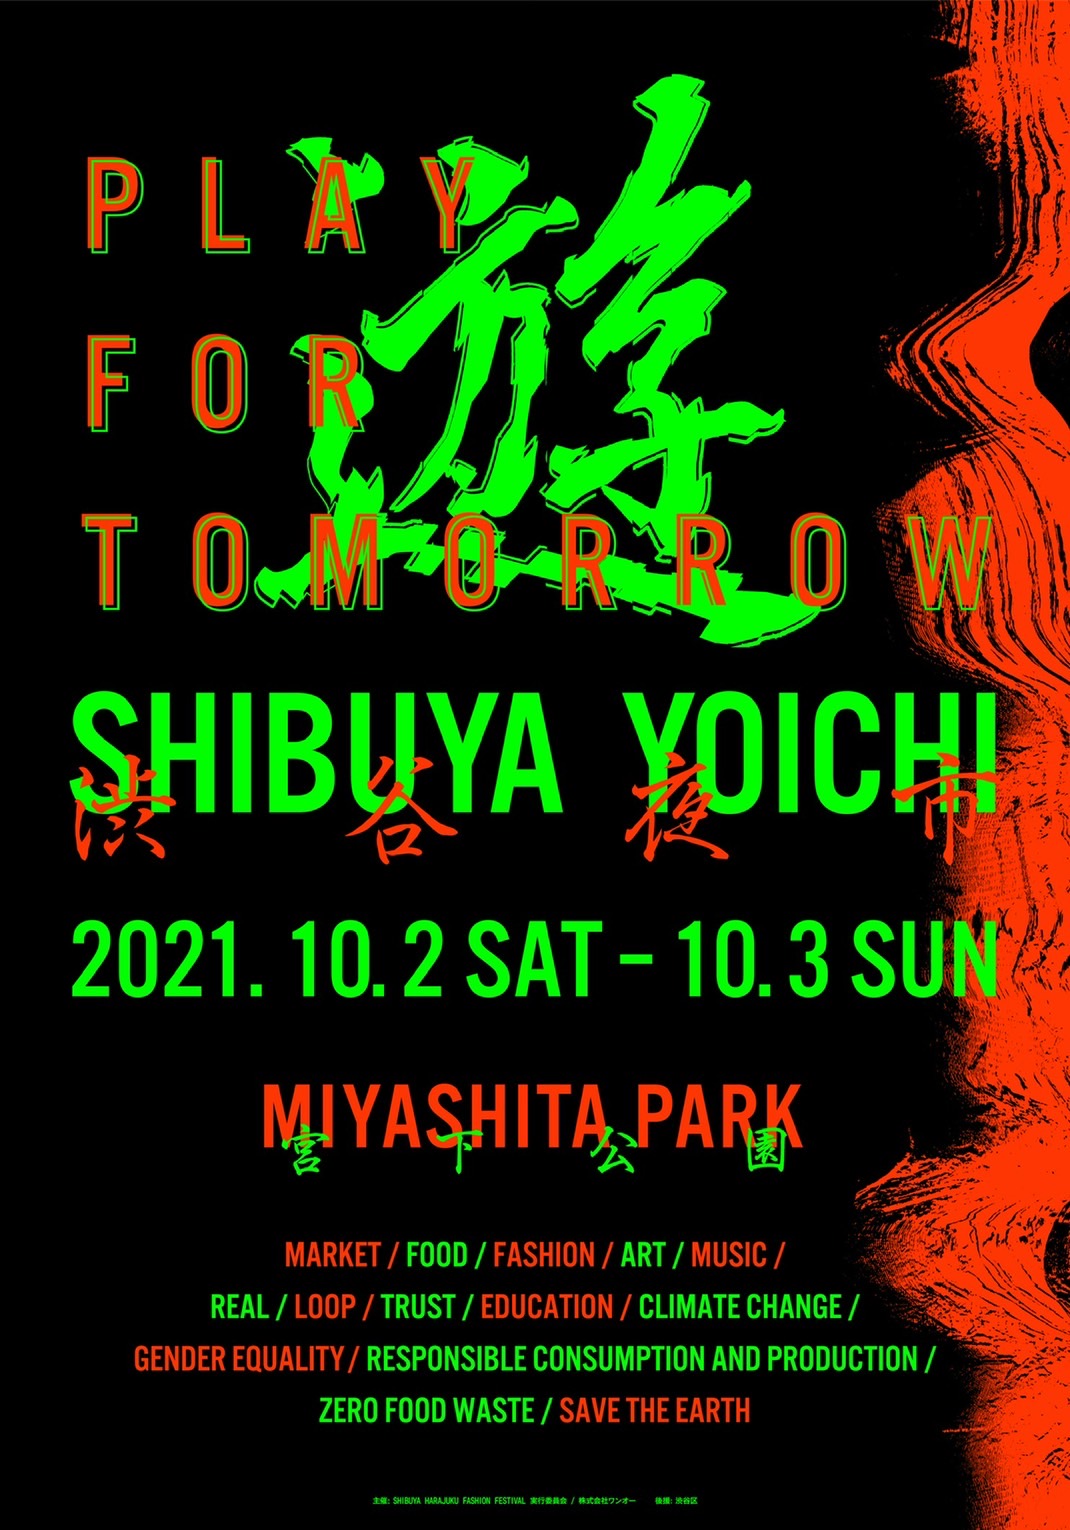 明日を考える都市型ナイトマーケット「渋谷夜市-SHIBUYA YOICHI-」が開催